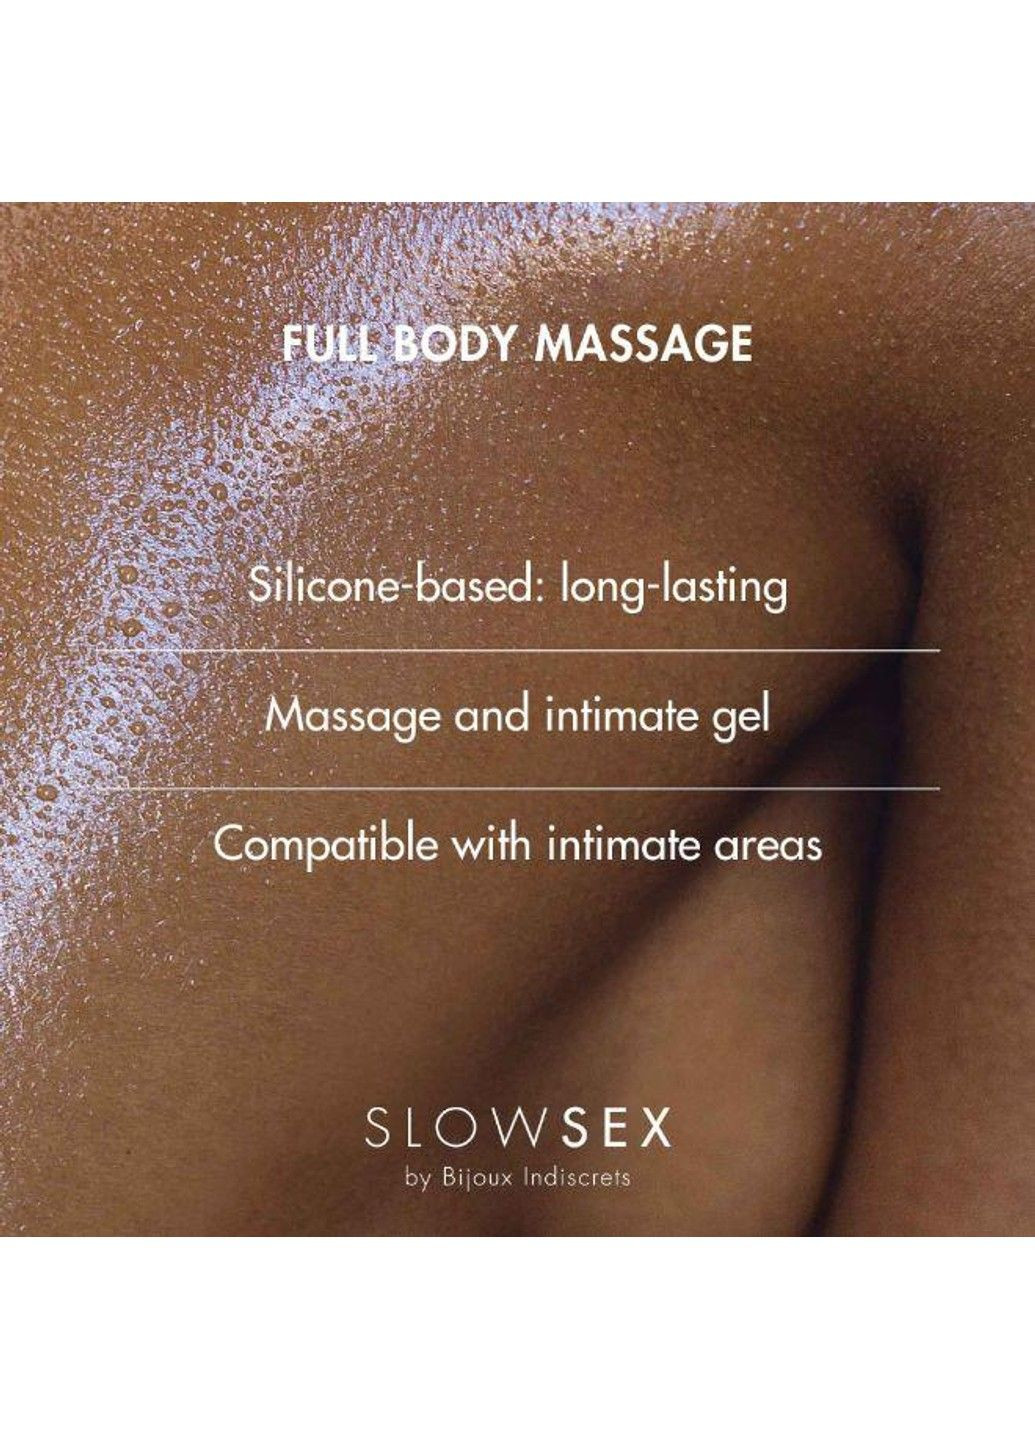 Гель для массажа всего тела на силиконовой основе FULL BODY MASSAGE Slow Sex by Indiscrets, 5 Bijoux (291120511)